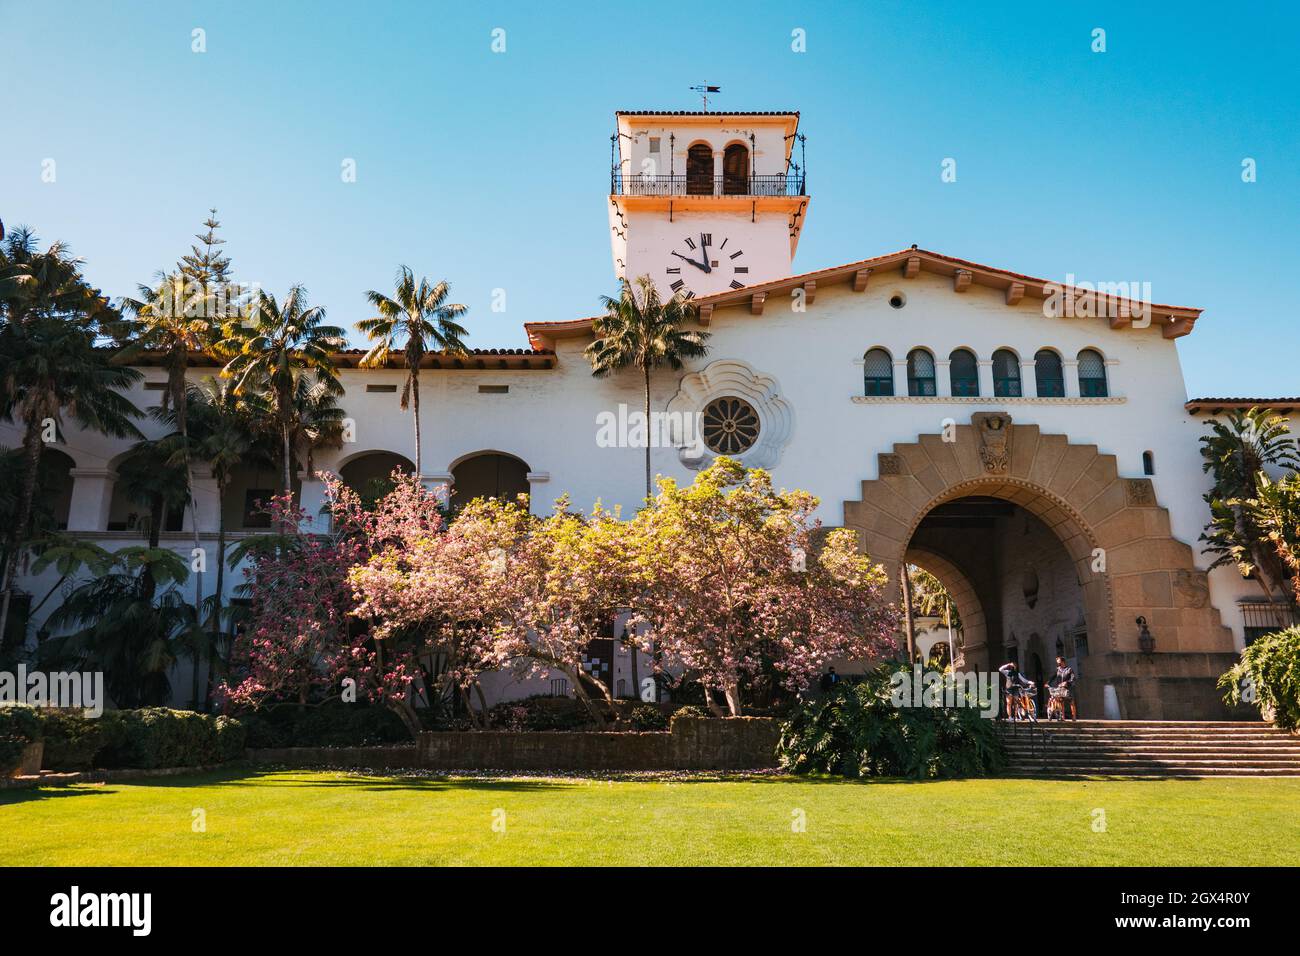 À l'intérieur de la cour et du jardin du palais de justice du comté de Santa Barbara de style colonial espagnol, Californie, États-Unis Banque D'Images